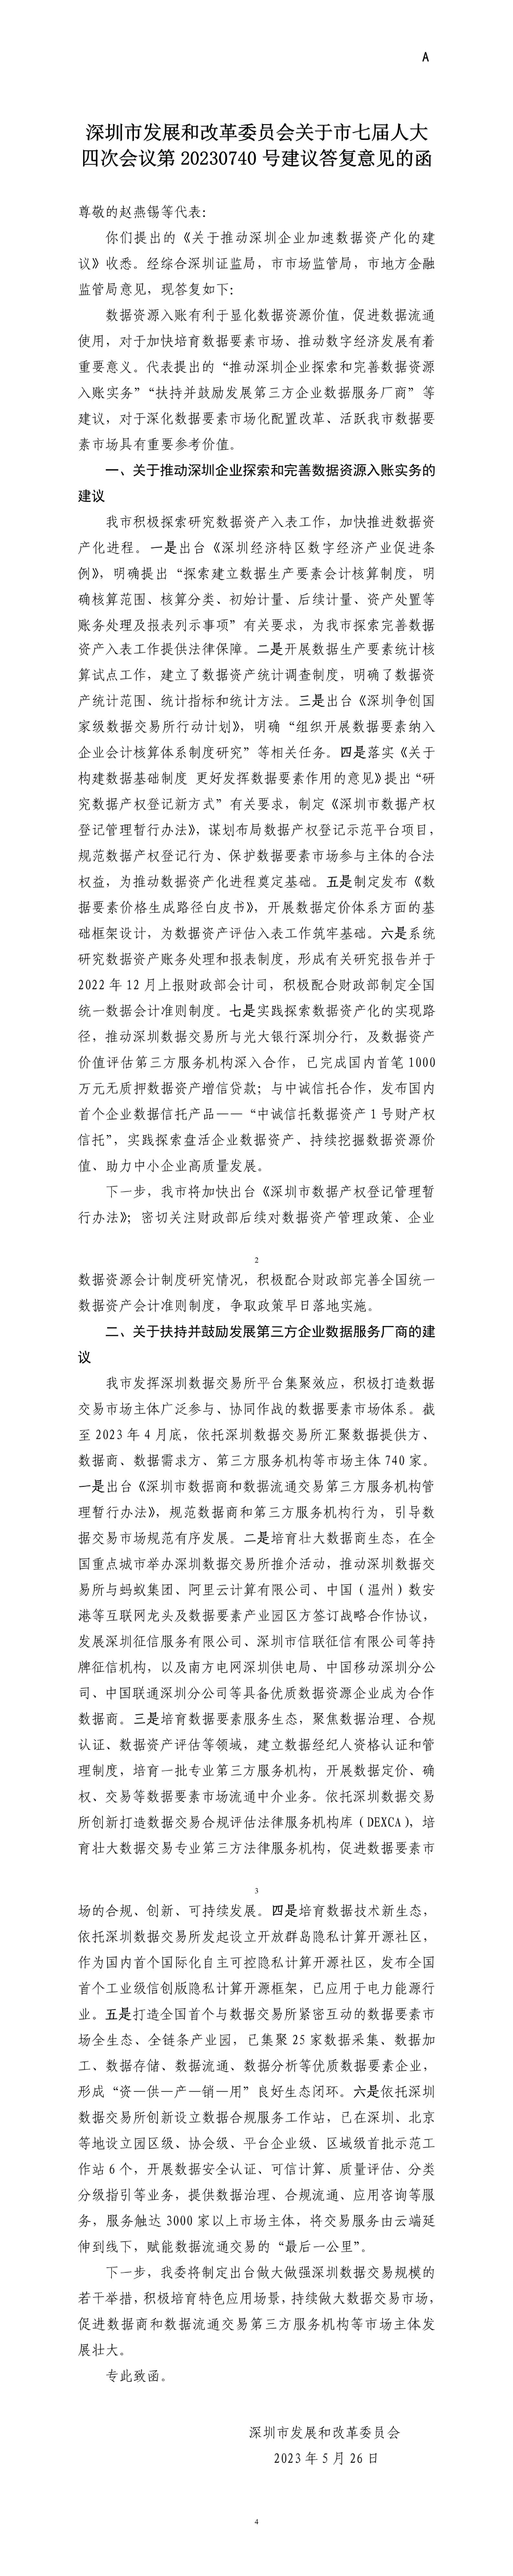 深圳市发展和改革委员会关于市七届人大四次会议第20230740号建议答复意见的函.jpg